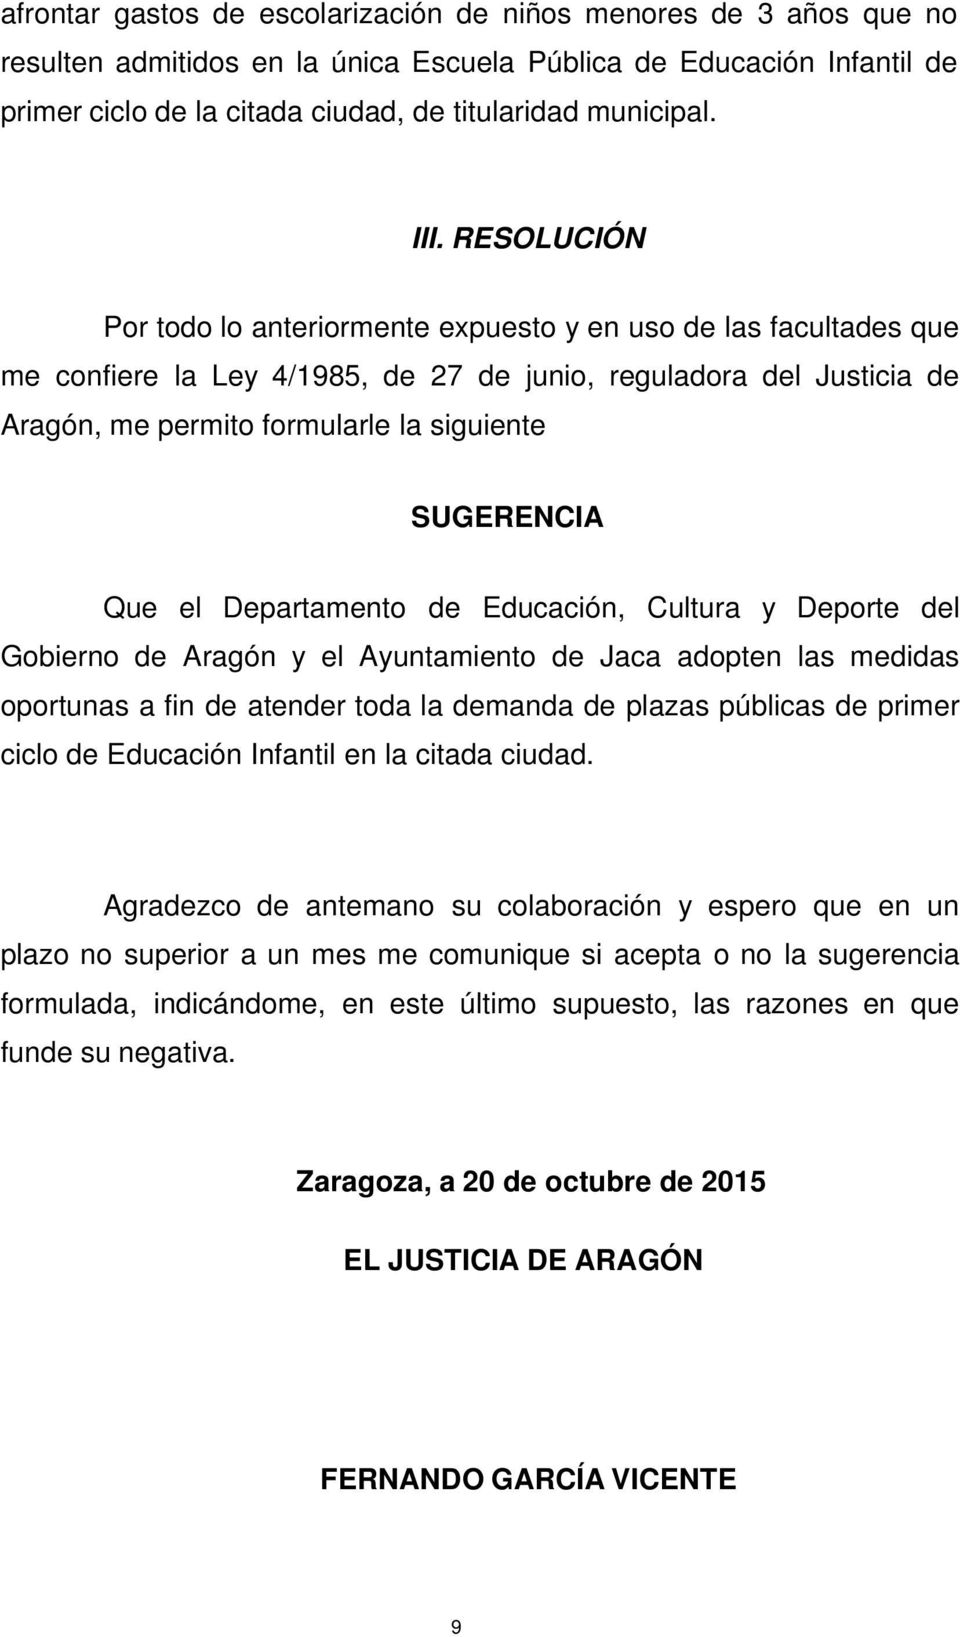 SUGERENCIA Que el Departamento de Educación, Cultura y Deporte del Gobierno de Aragón y el Ayuntamiento de Jaca adopten las medidas oportunas a fin de atender toda la demanda de plazas públicas de